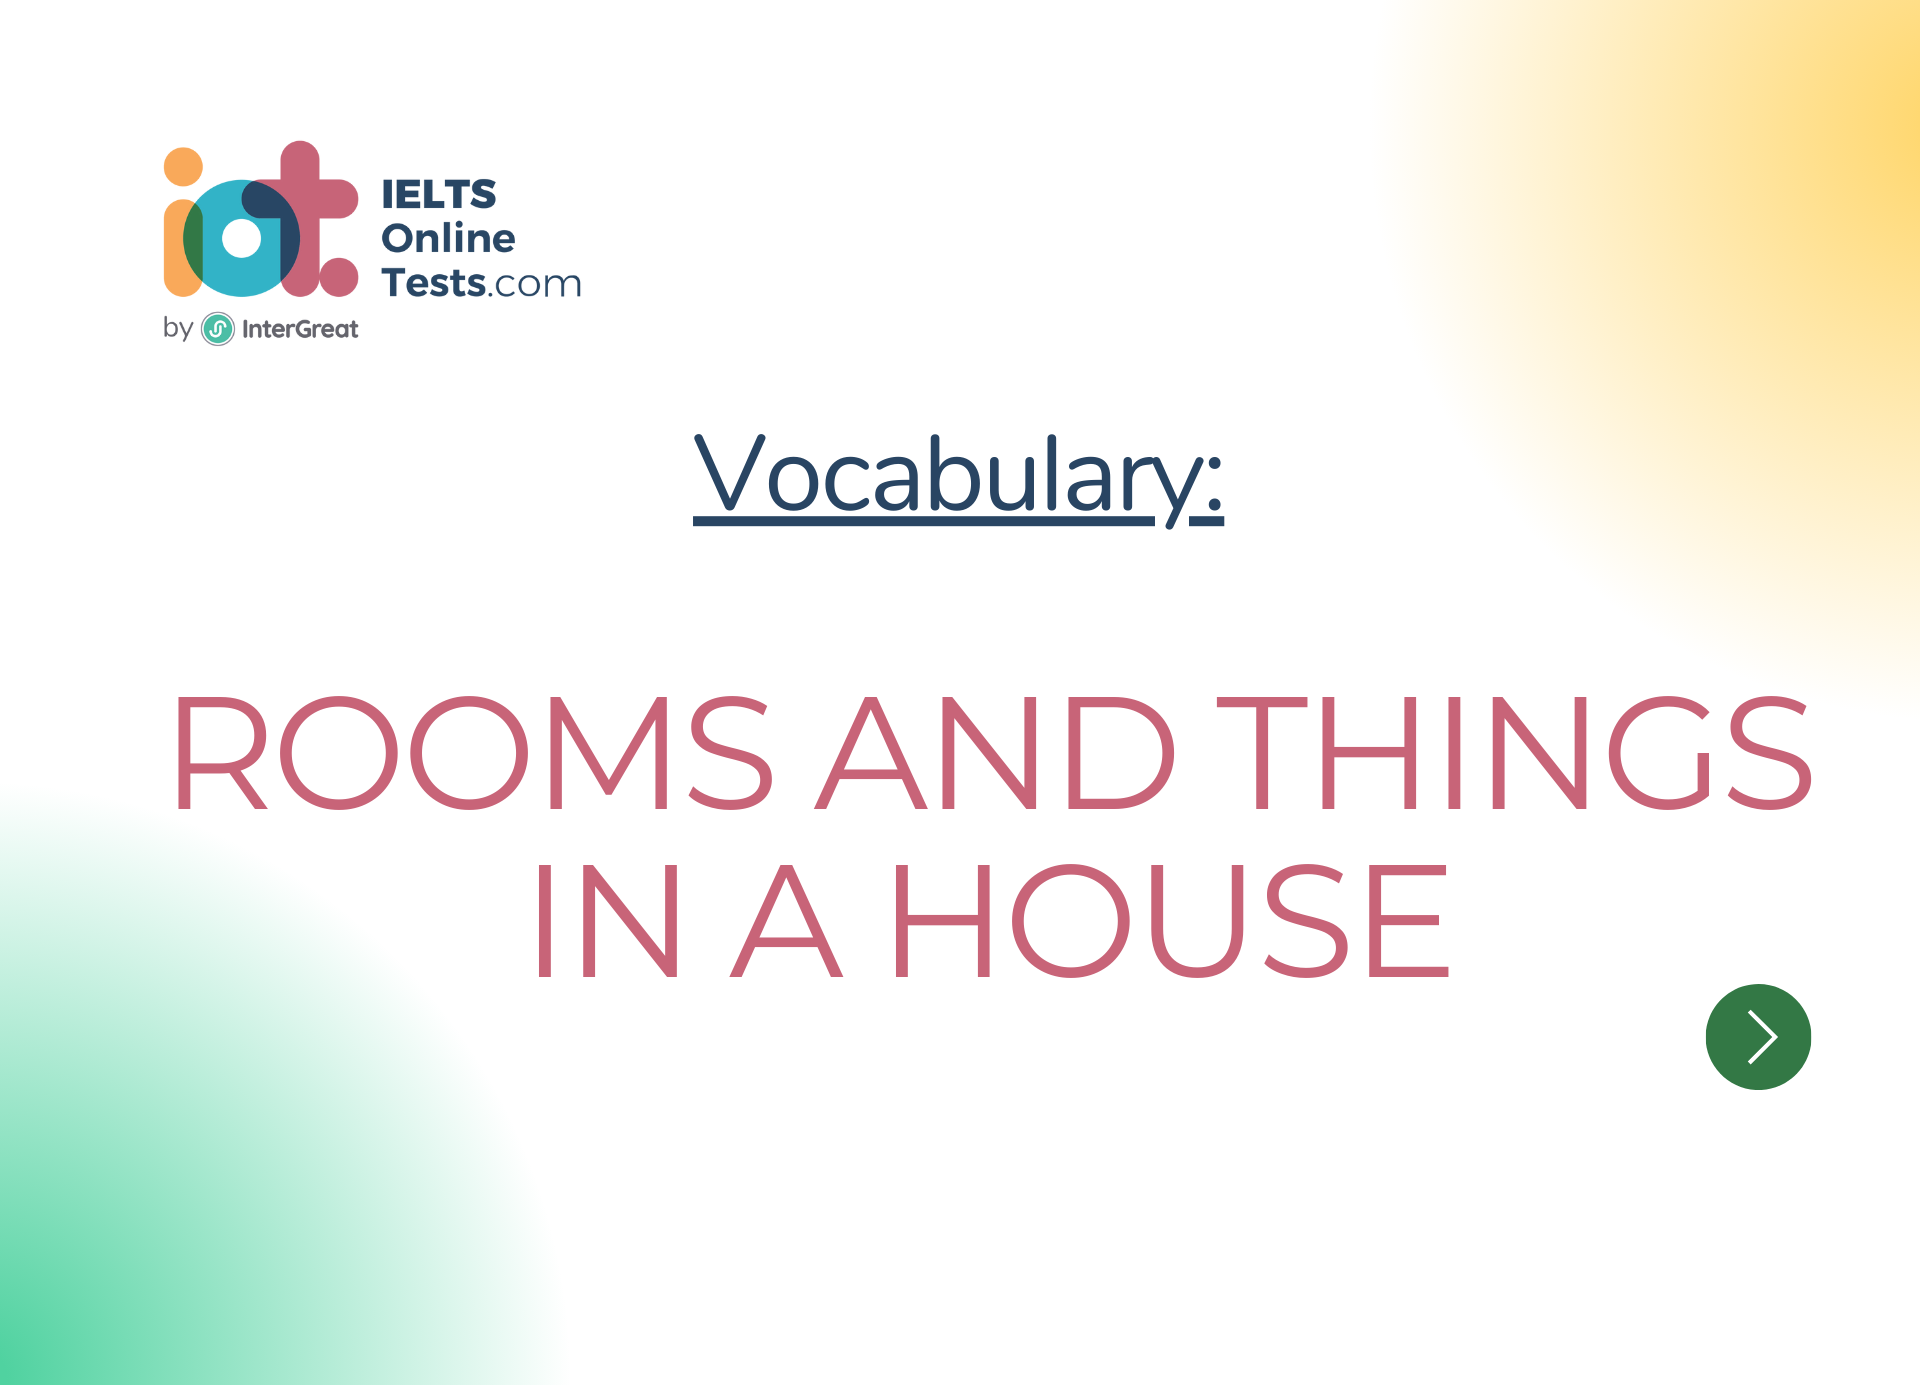 Các phòng và đồ vật trong nhà (Rooms and things in the house)